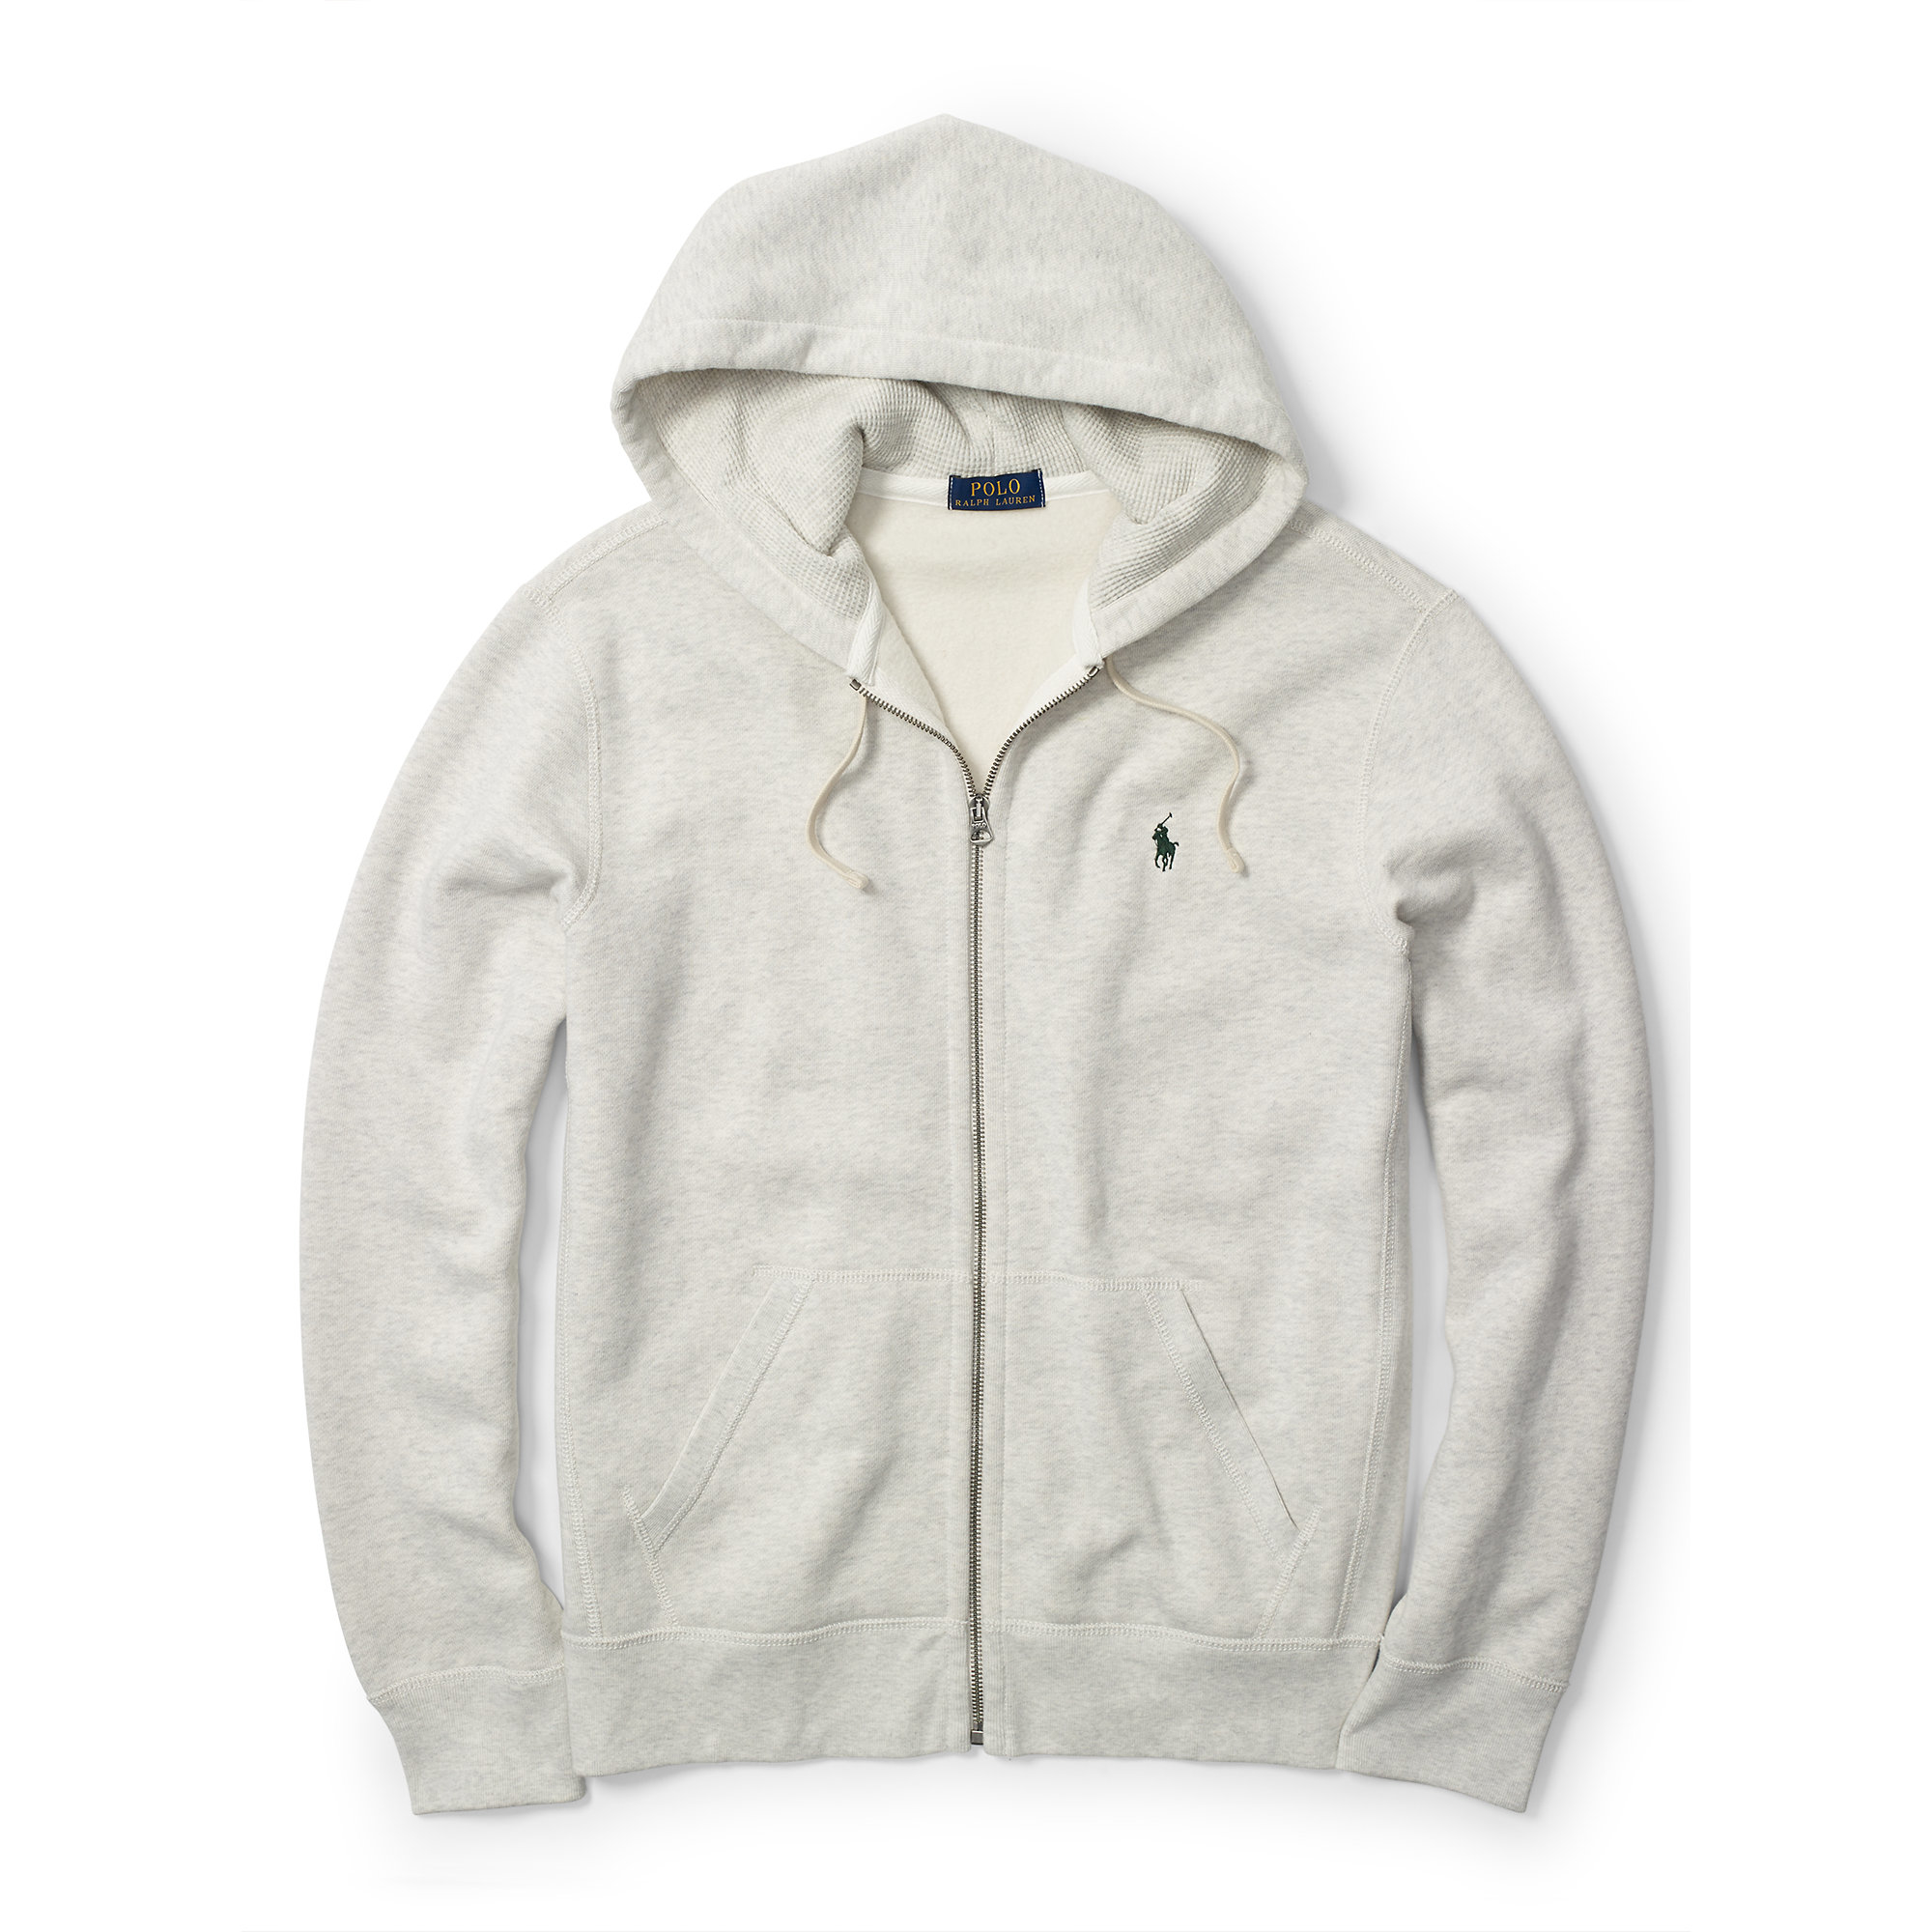 Polo Ralph Lauren Fleece Full-zip Hoodie in White for Men - Lyst